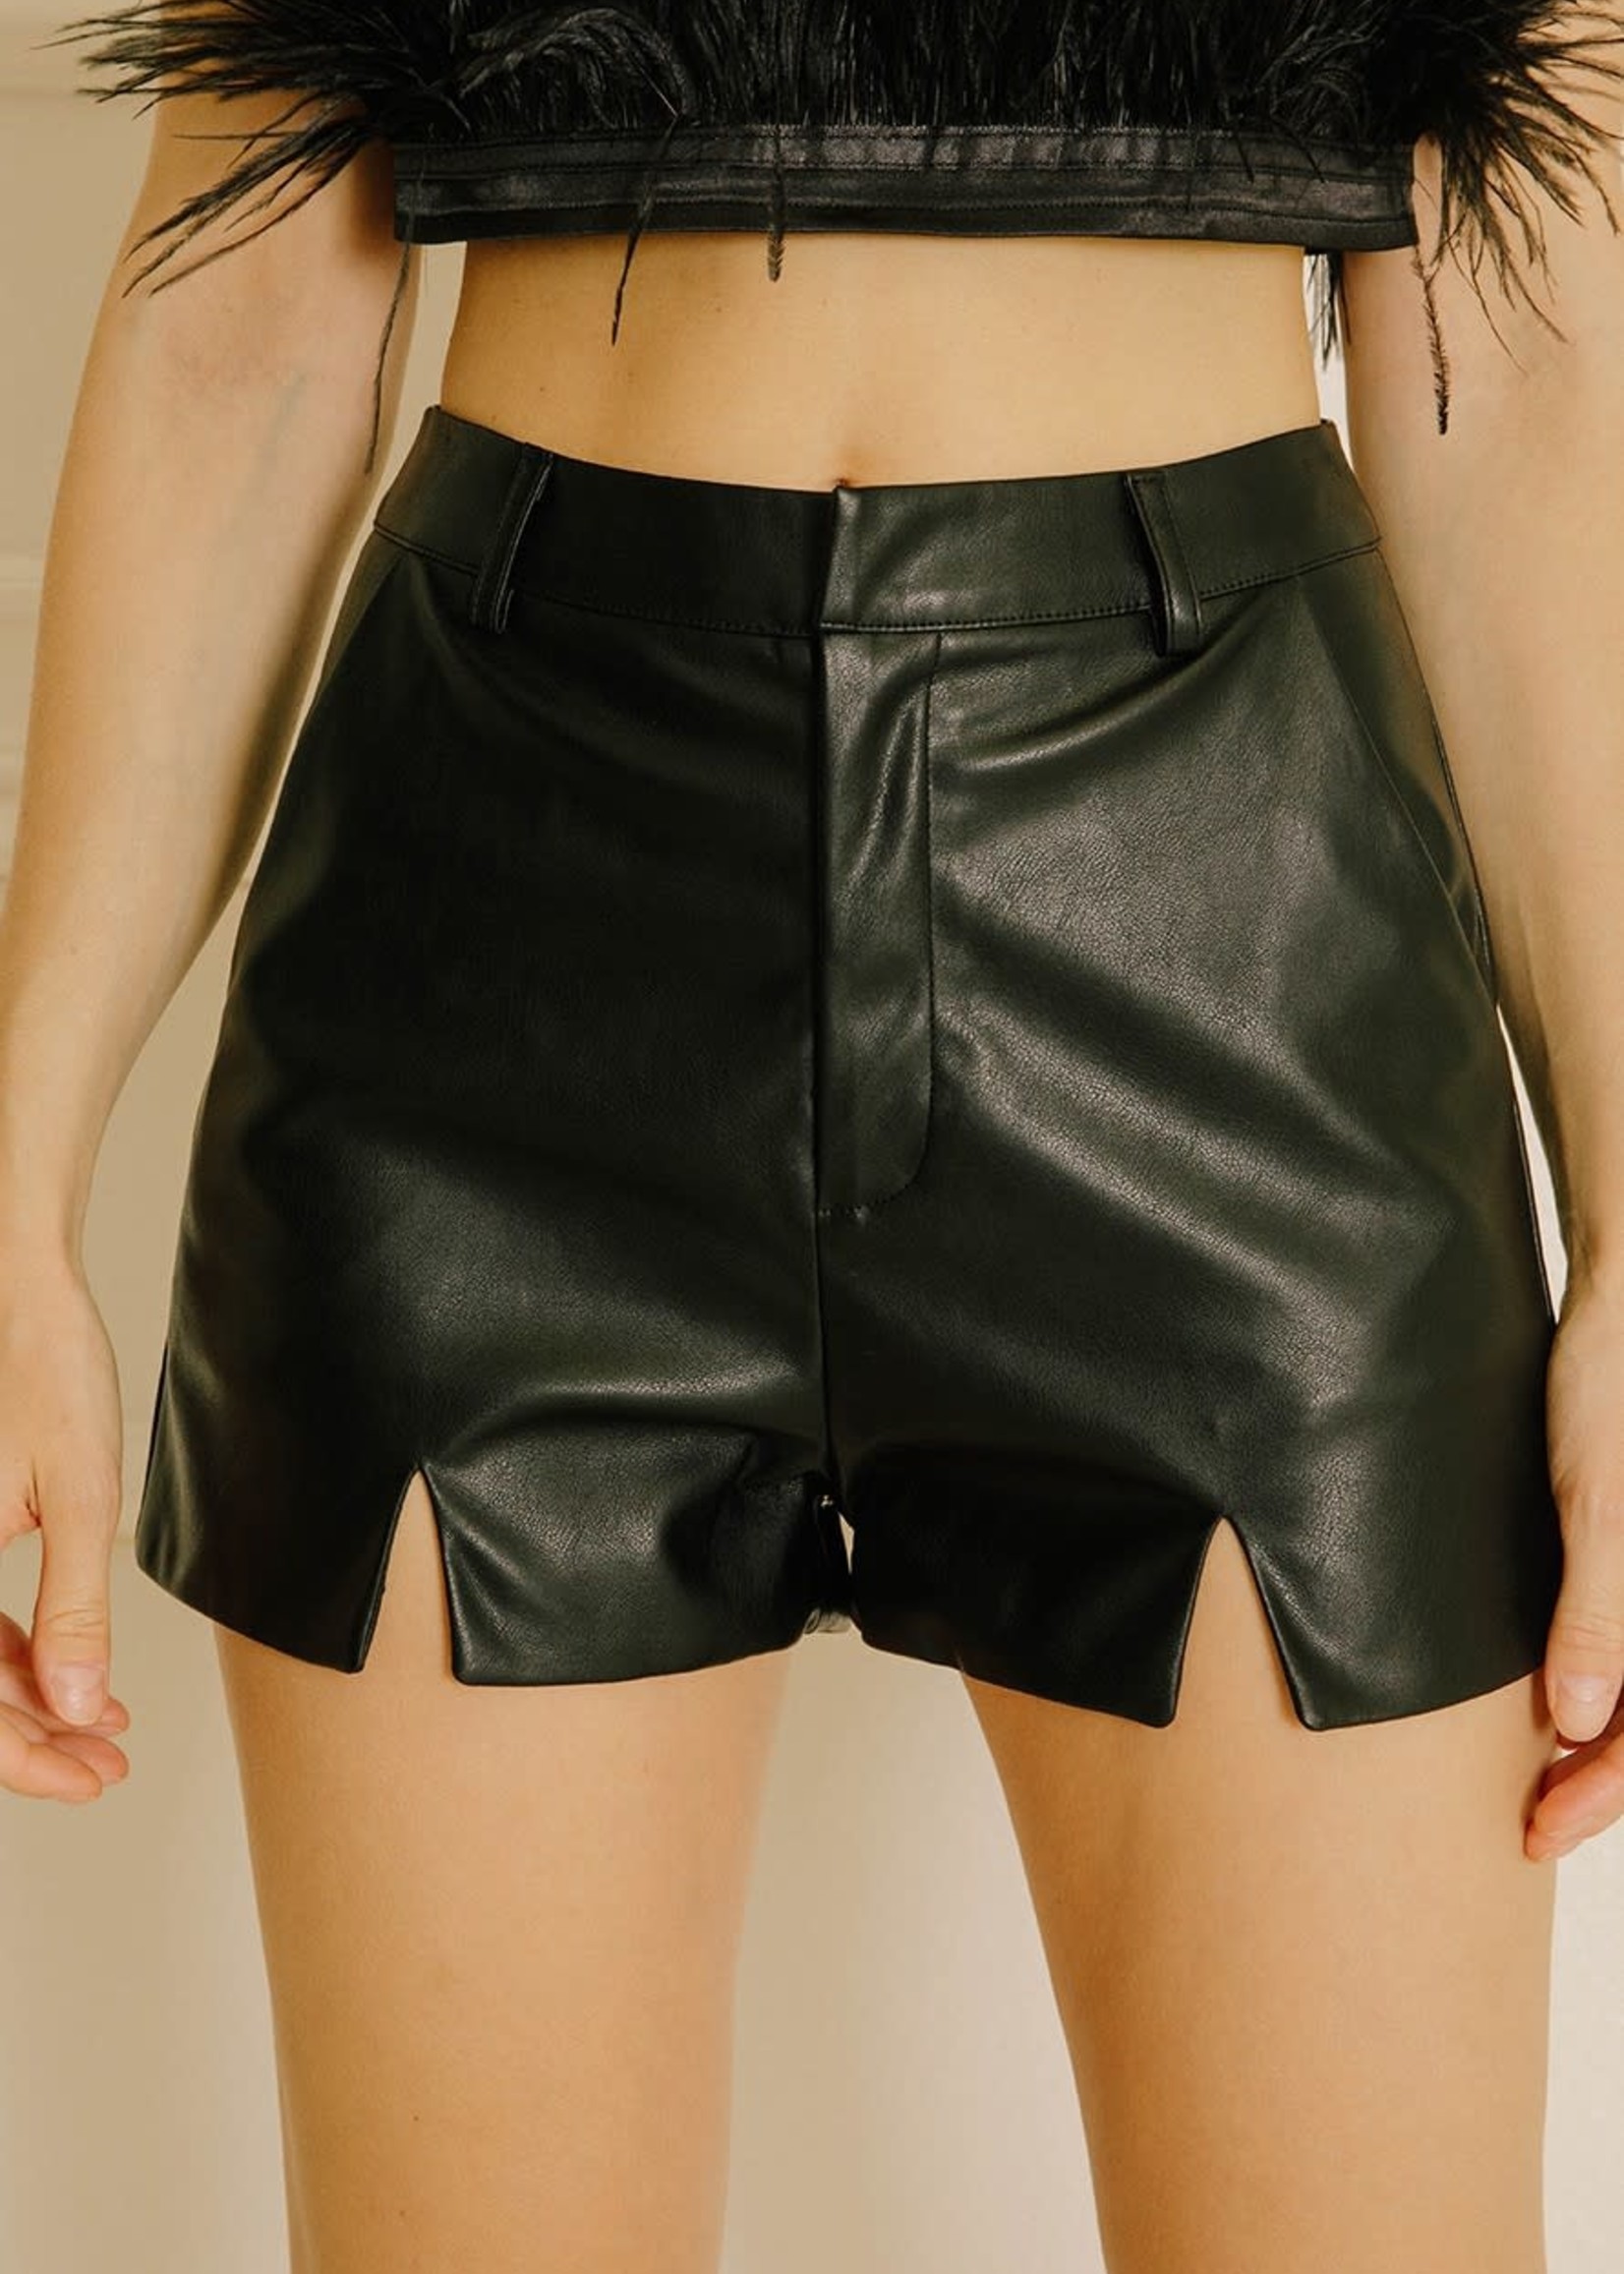 Everyday Black Leather Shorts